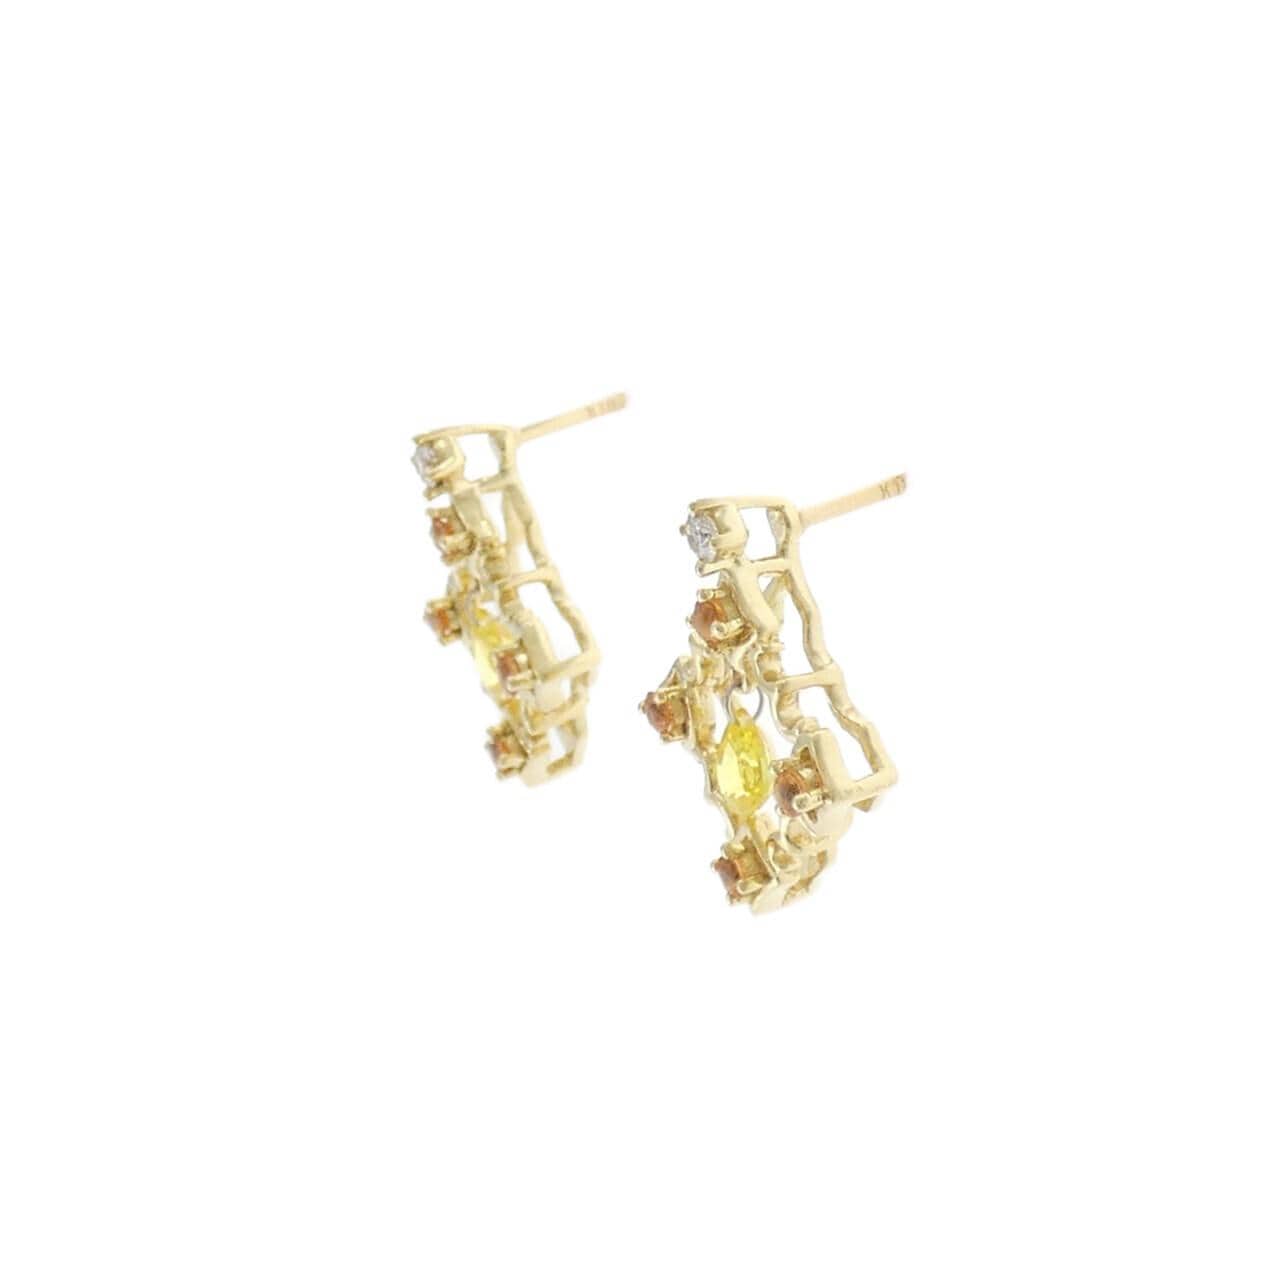 K18YG sapphire earrings